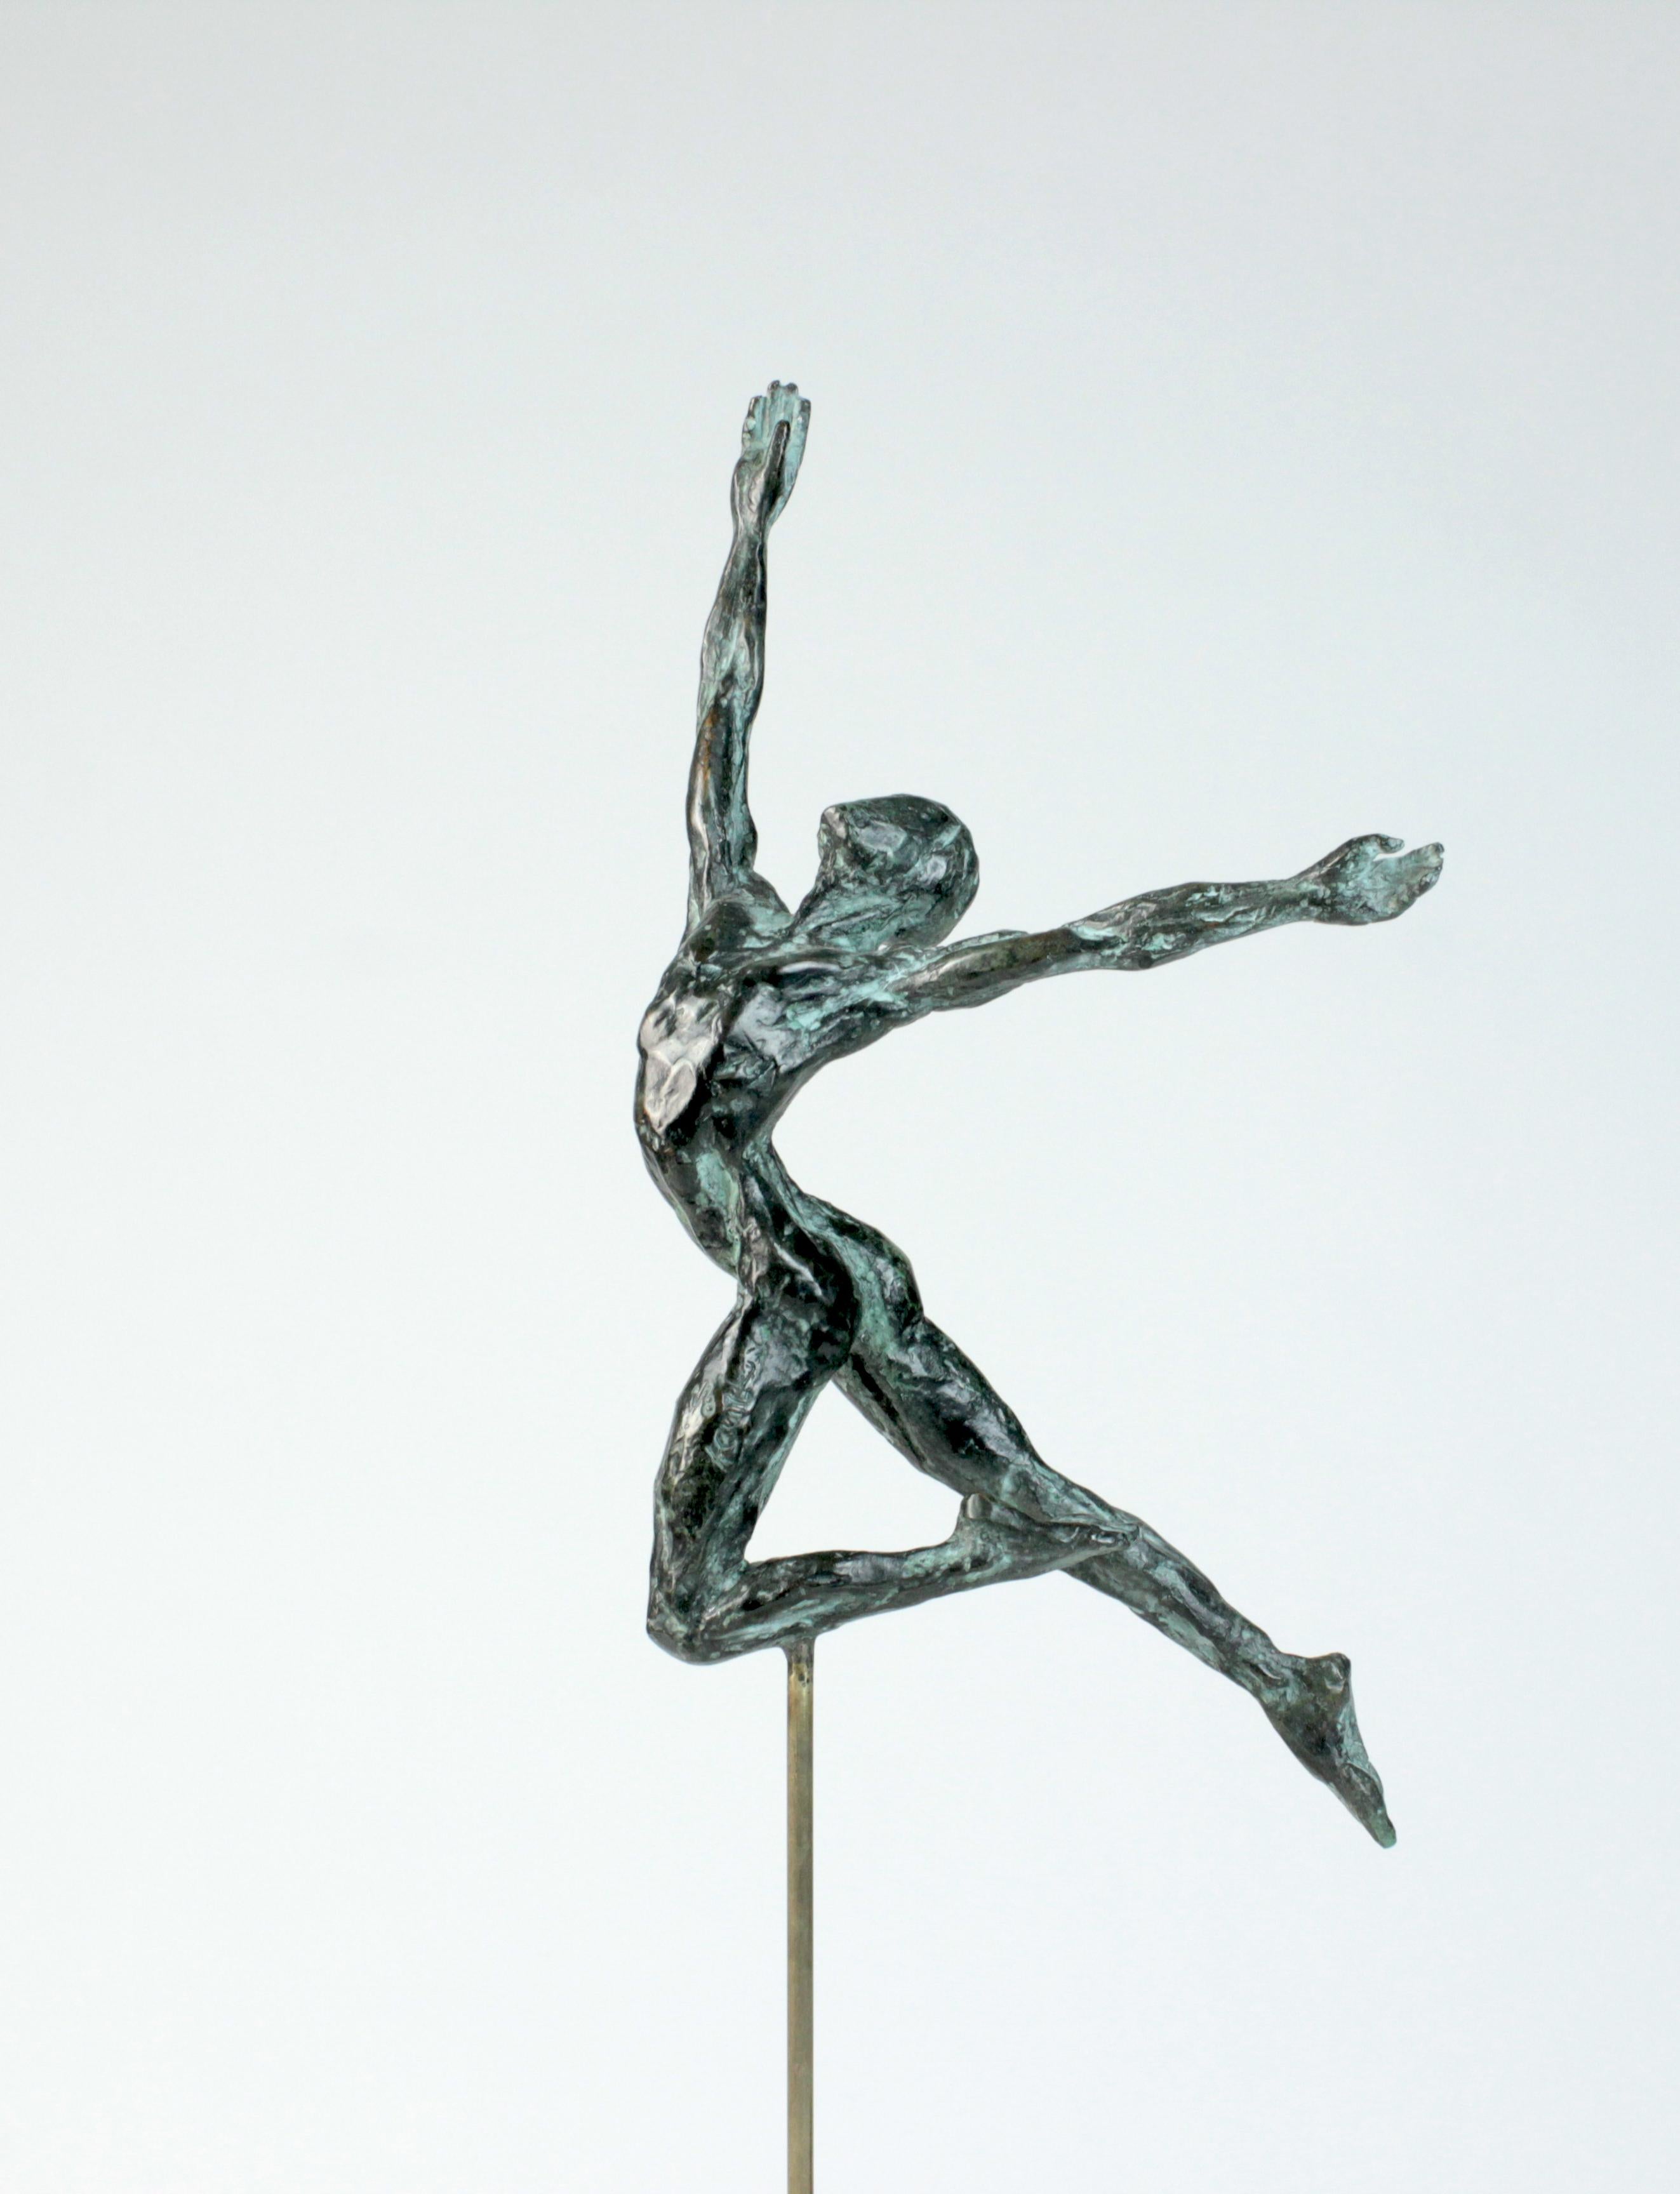 Die Tänzerin "Elevation" ist eine Bronzeskulptur des zeitgenössischen Künstlers Yann Guillon mit den Maßen 37 × 22 × 15 cm (14,6 × 8,7 × 5,9 in). Höhe der Skulptur mit Metallsockel: 51 cm (20 Zoll). 
Die Skulptur ist signiert und nummeriert, gehört